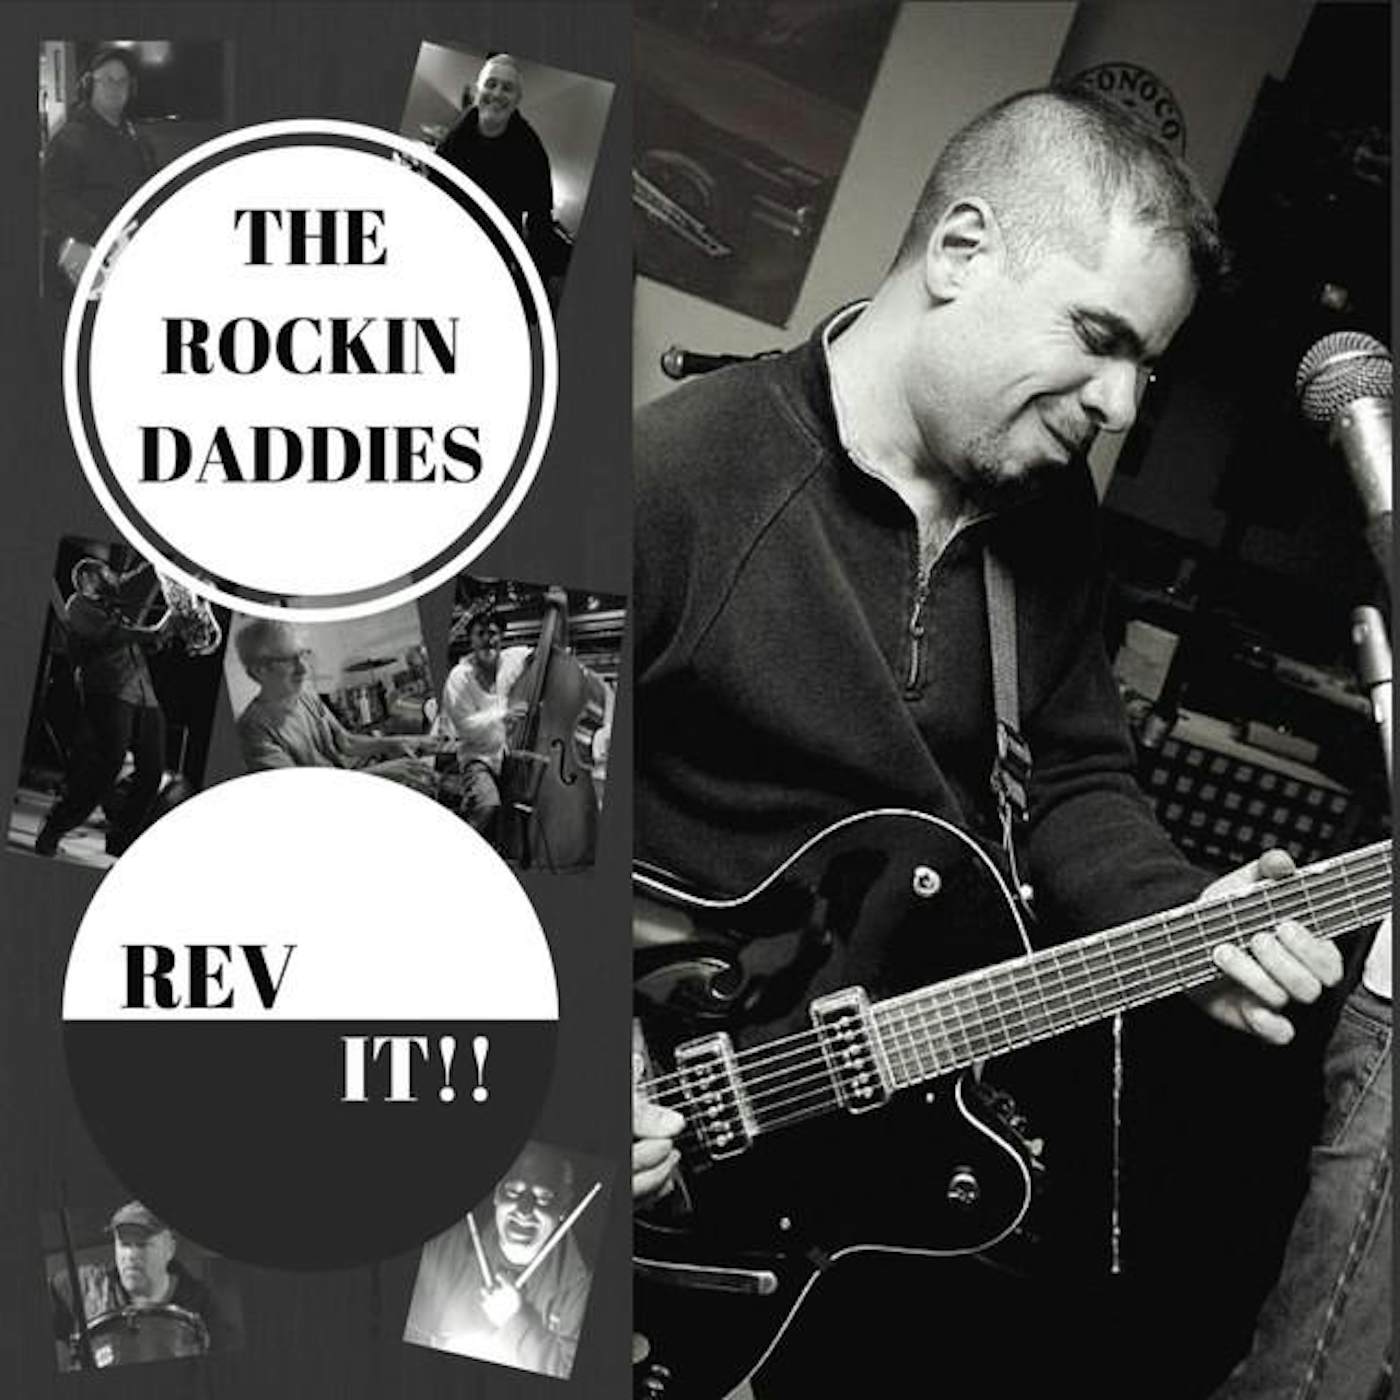 The Rockin' Daddies